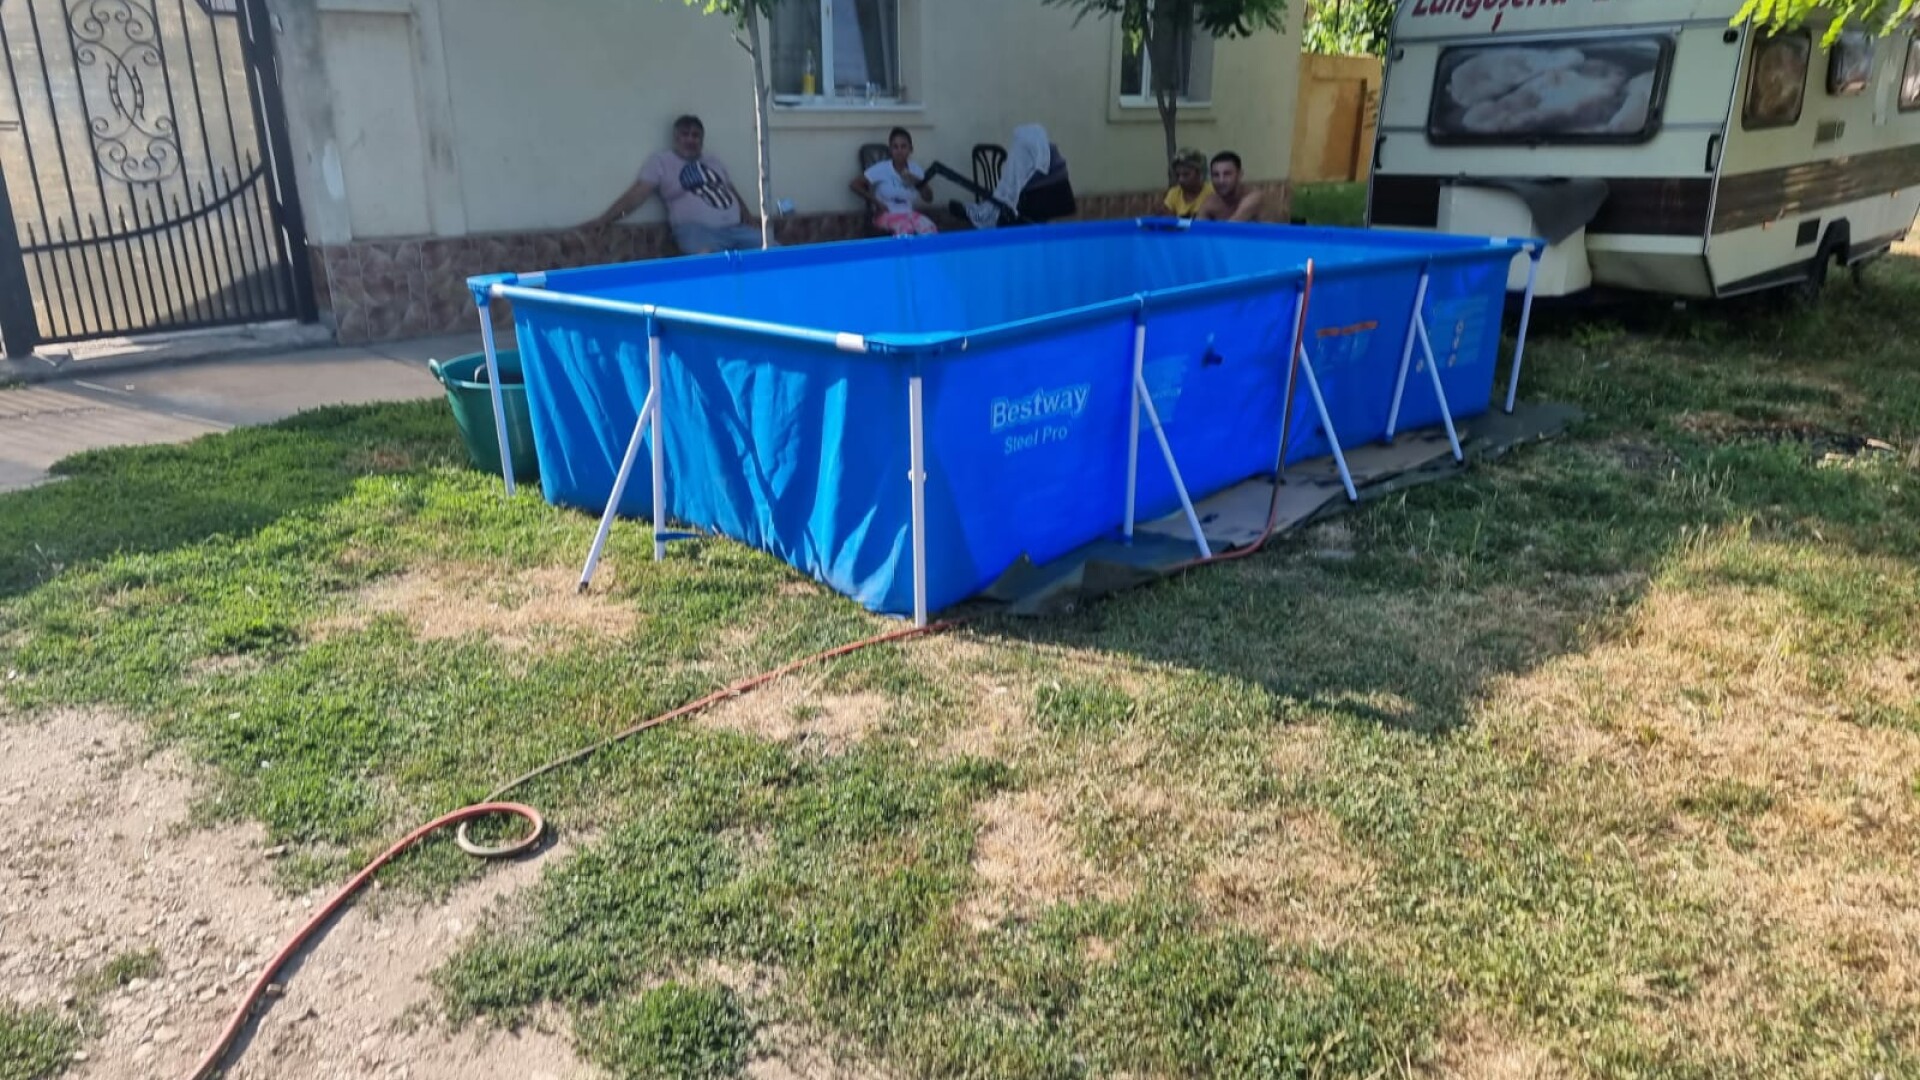 O familie din Timiș și-a făcut piscină în fața casei cu apă adusă de la 50 de metri cu furtunul, de la fântâna publică